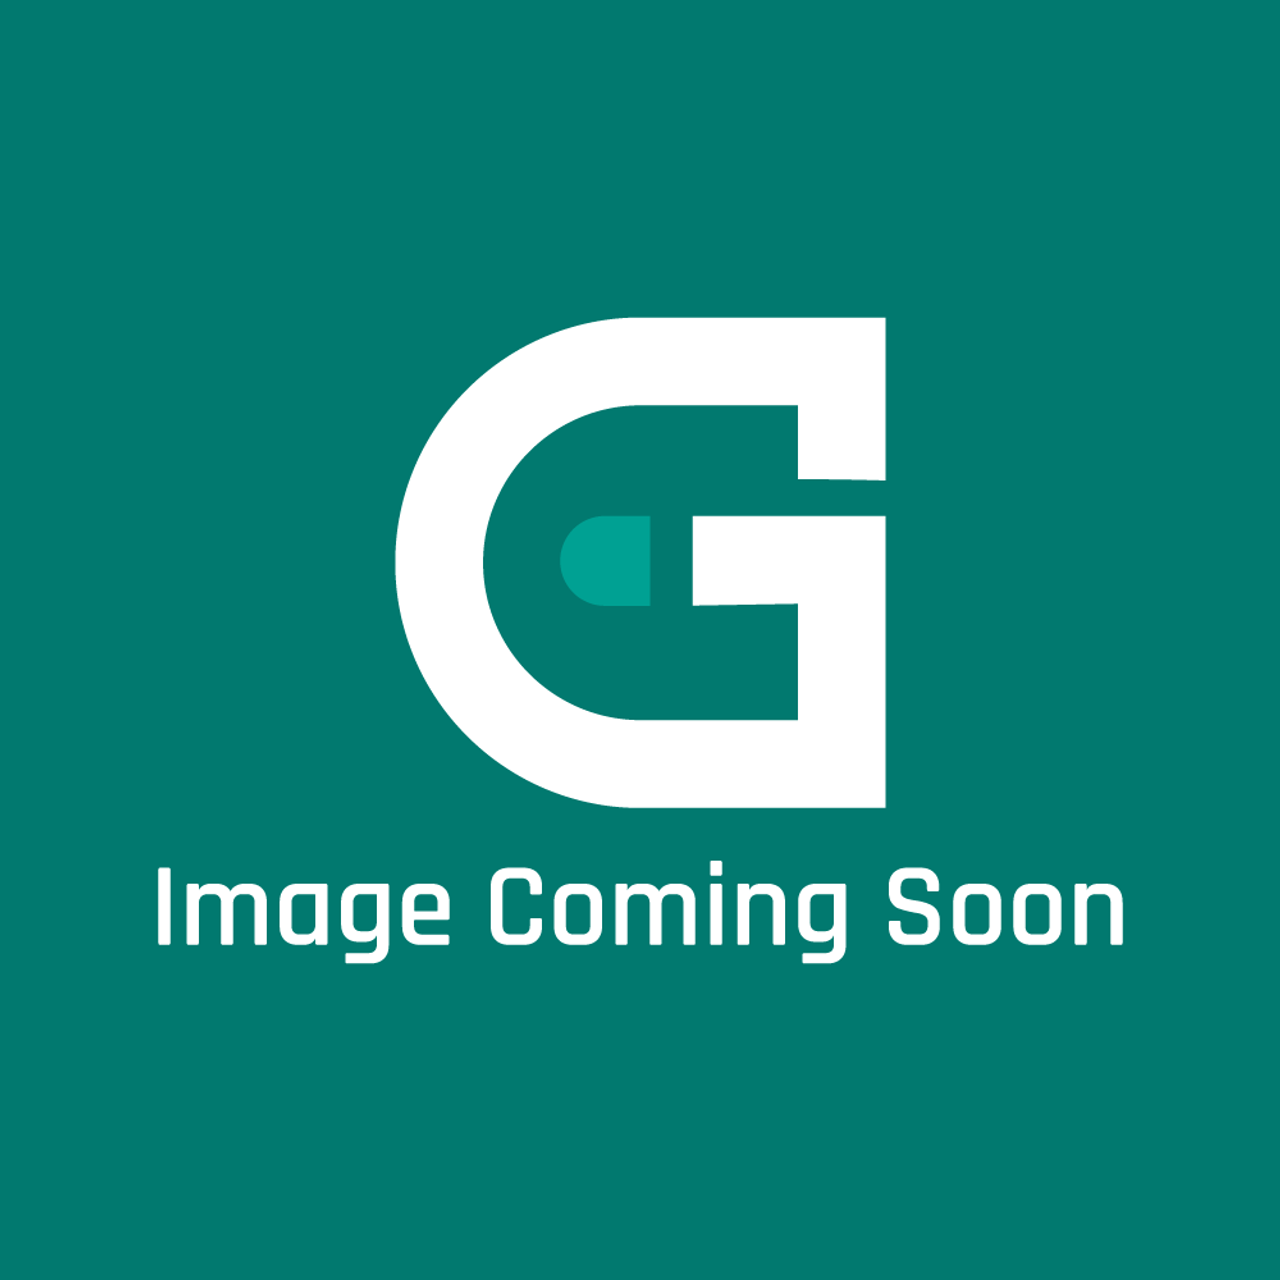 AGA Marvel R2417 - Solenoid Ckr Burner Lpg Gd80 - Image Coming Soon!